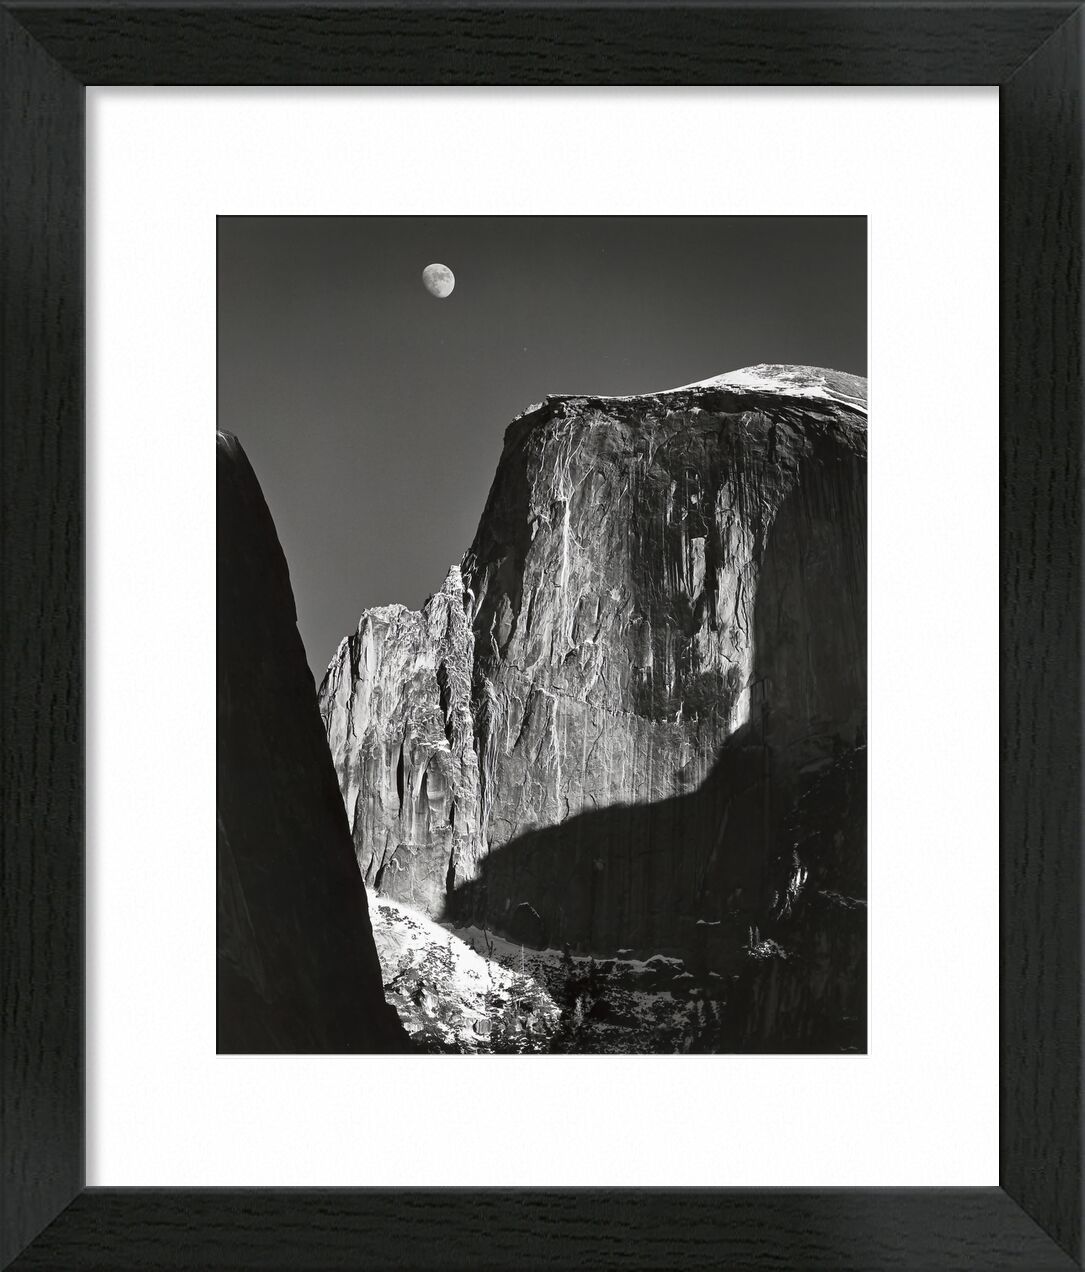 Yosemite national park,  California - ANSEL ADAMS - 1960 von Bildende Kunst, Prodi Art, ANSEL ADAMS, Schwarz und weiß, Schatten, Himmel, Mond, Berge